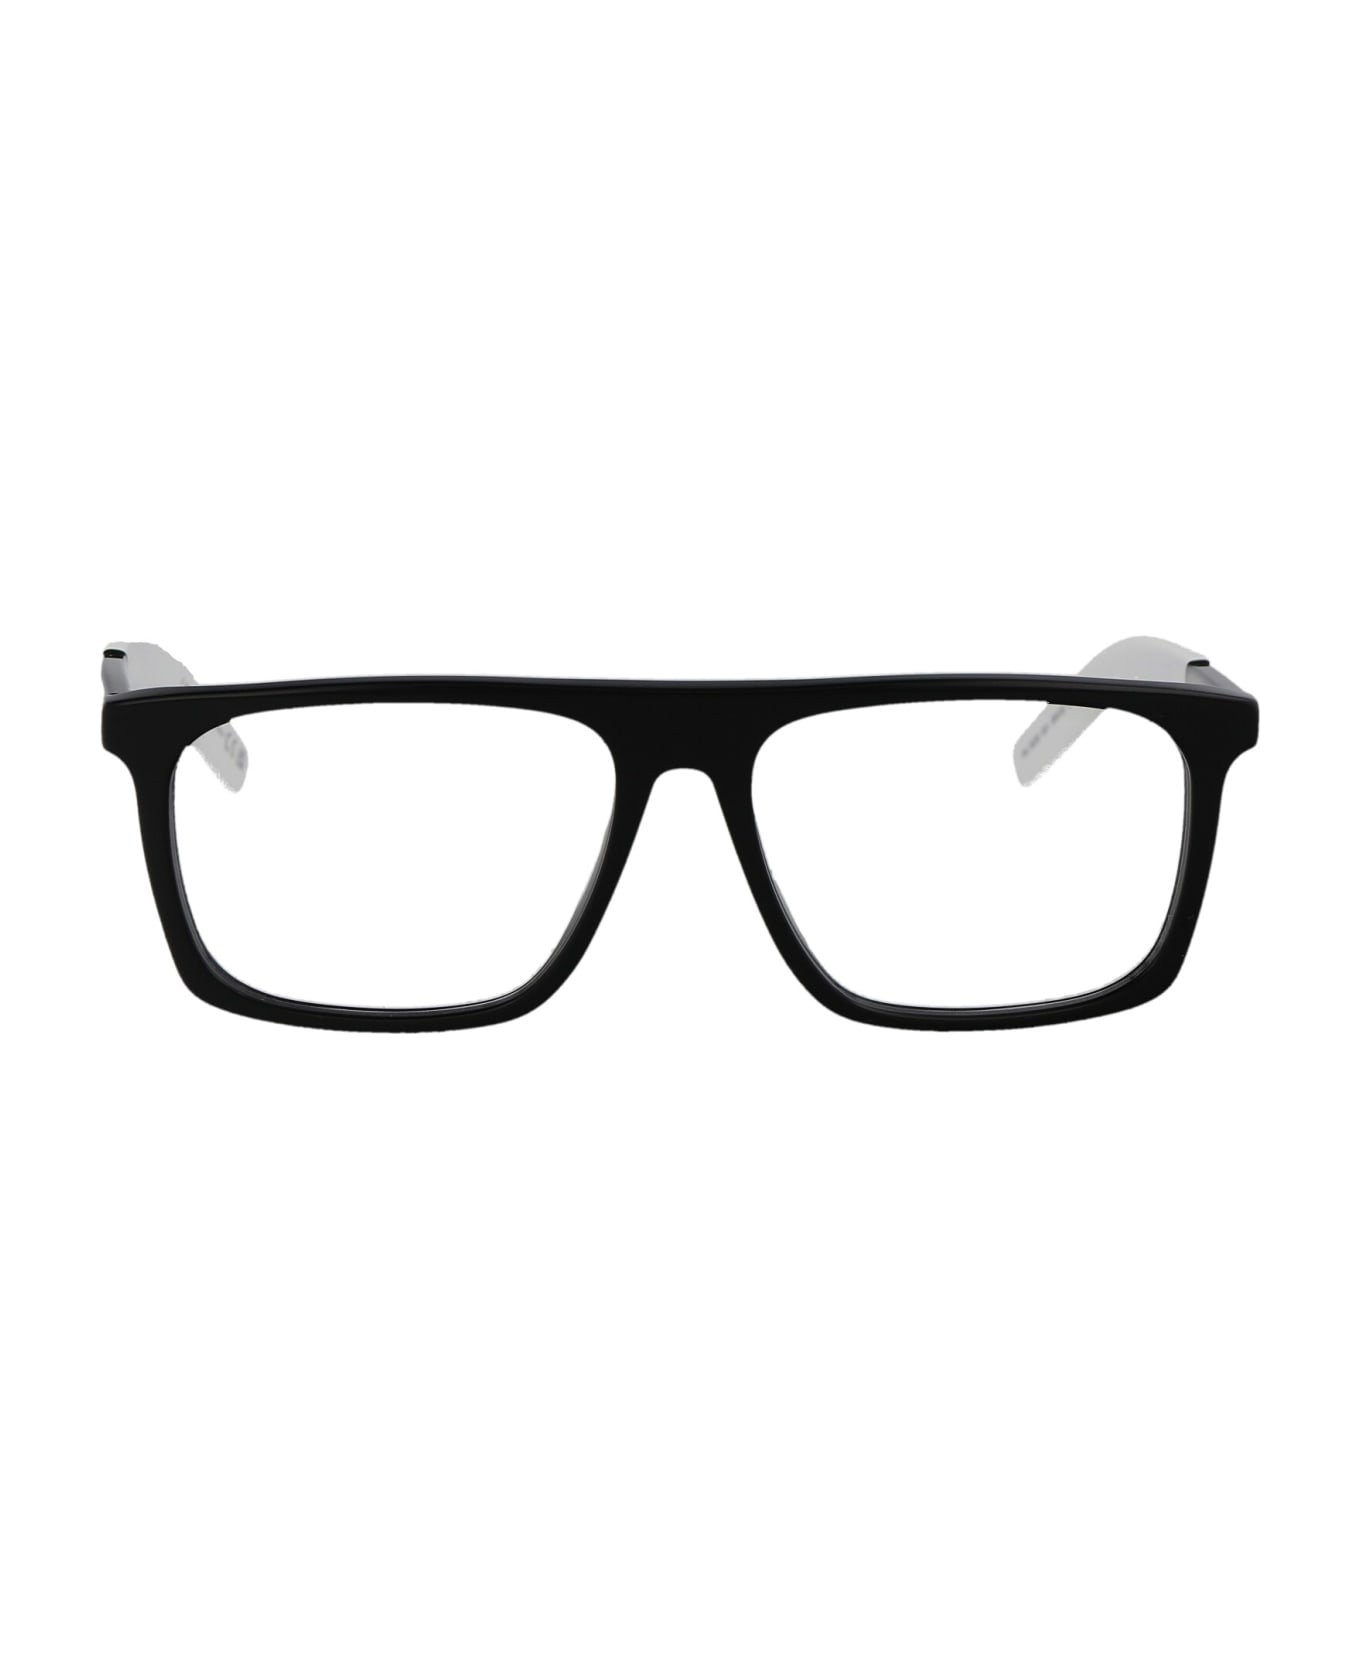 Moncler Eyewear Ml5206 Glasses - 001 Nero Lucido アイウェア